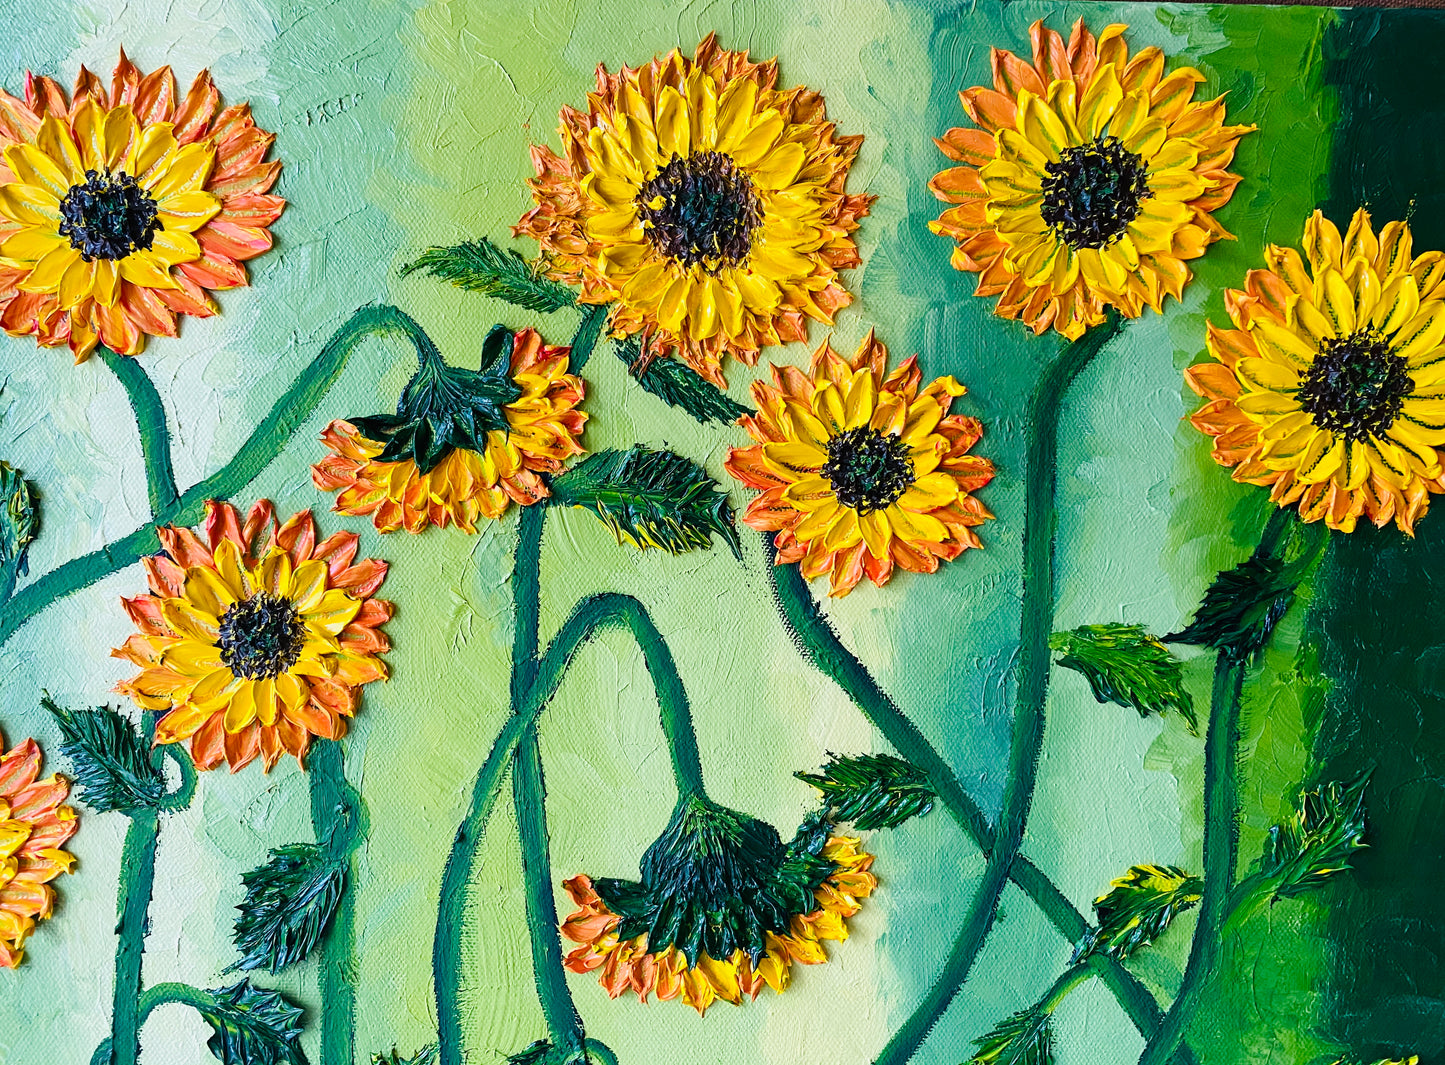 “Sunflower bunch in a garden”